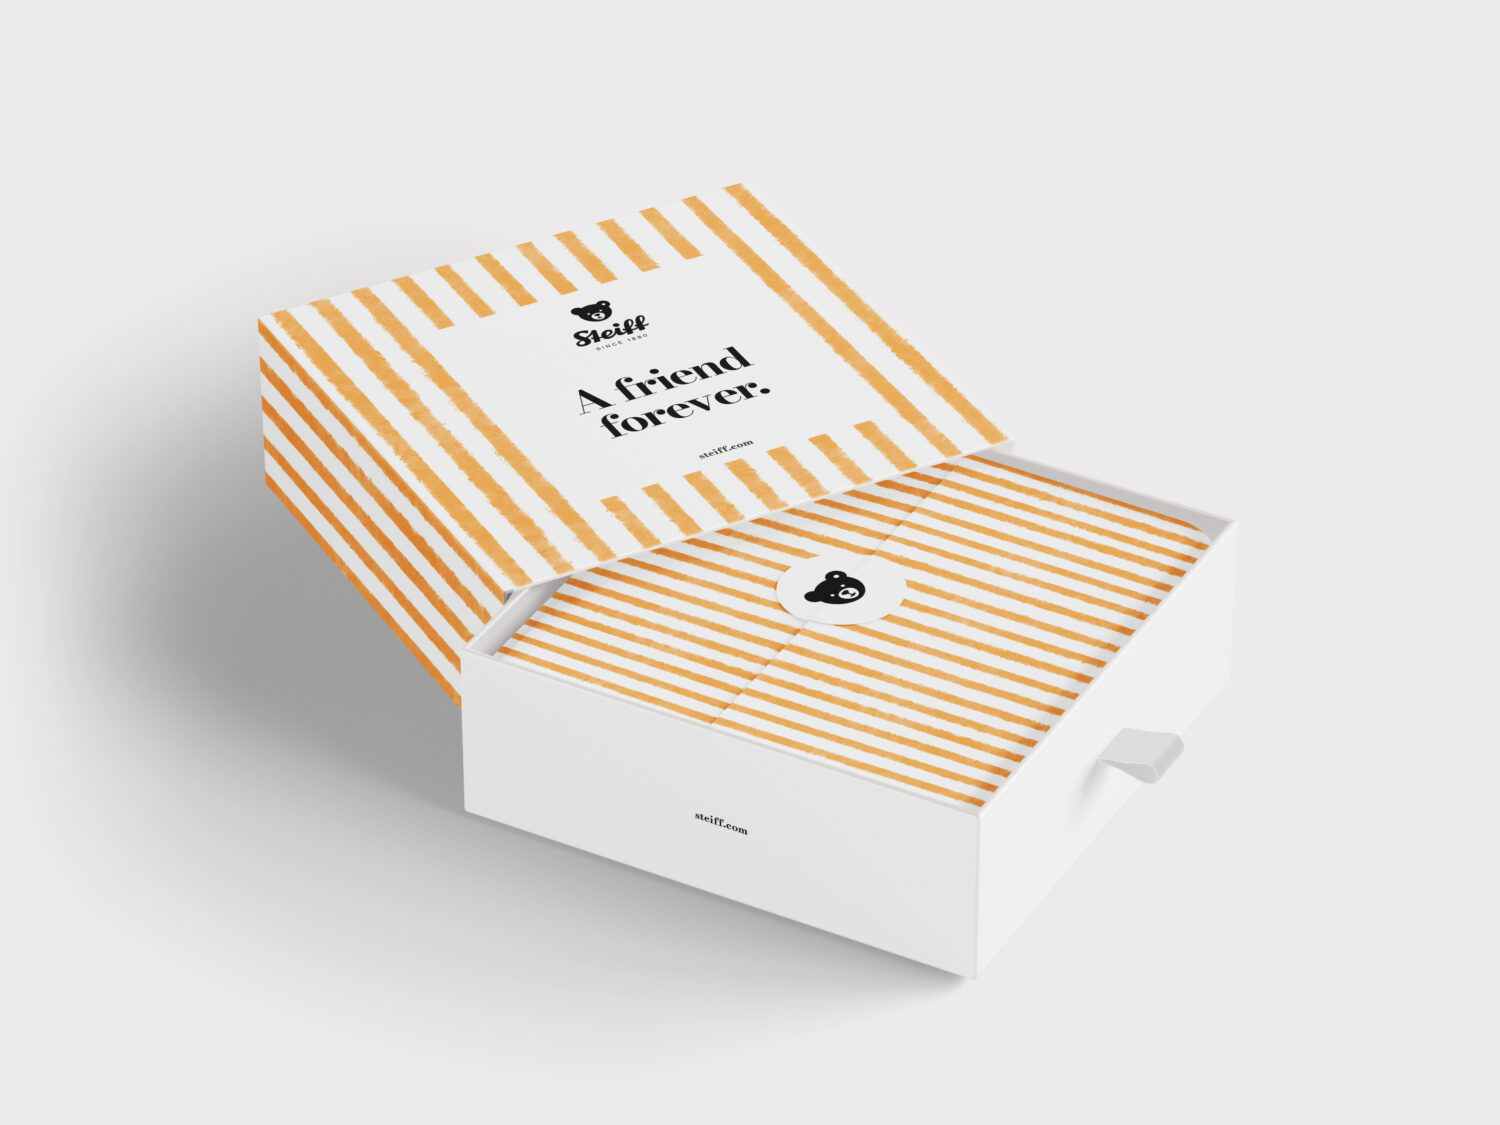 Steiff Branding – Packaging